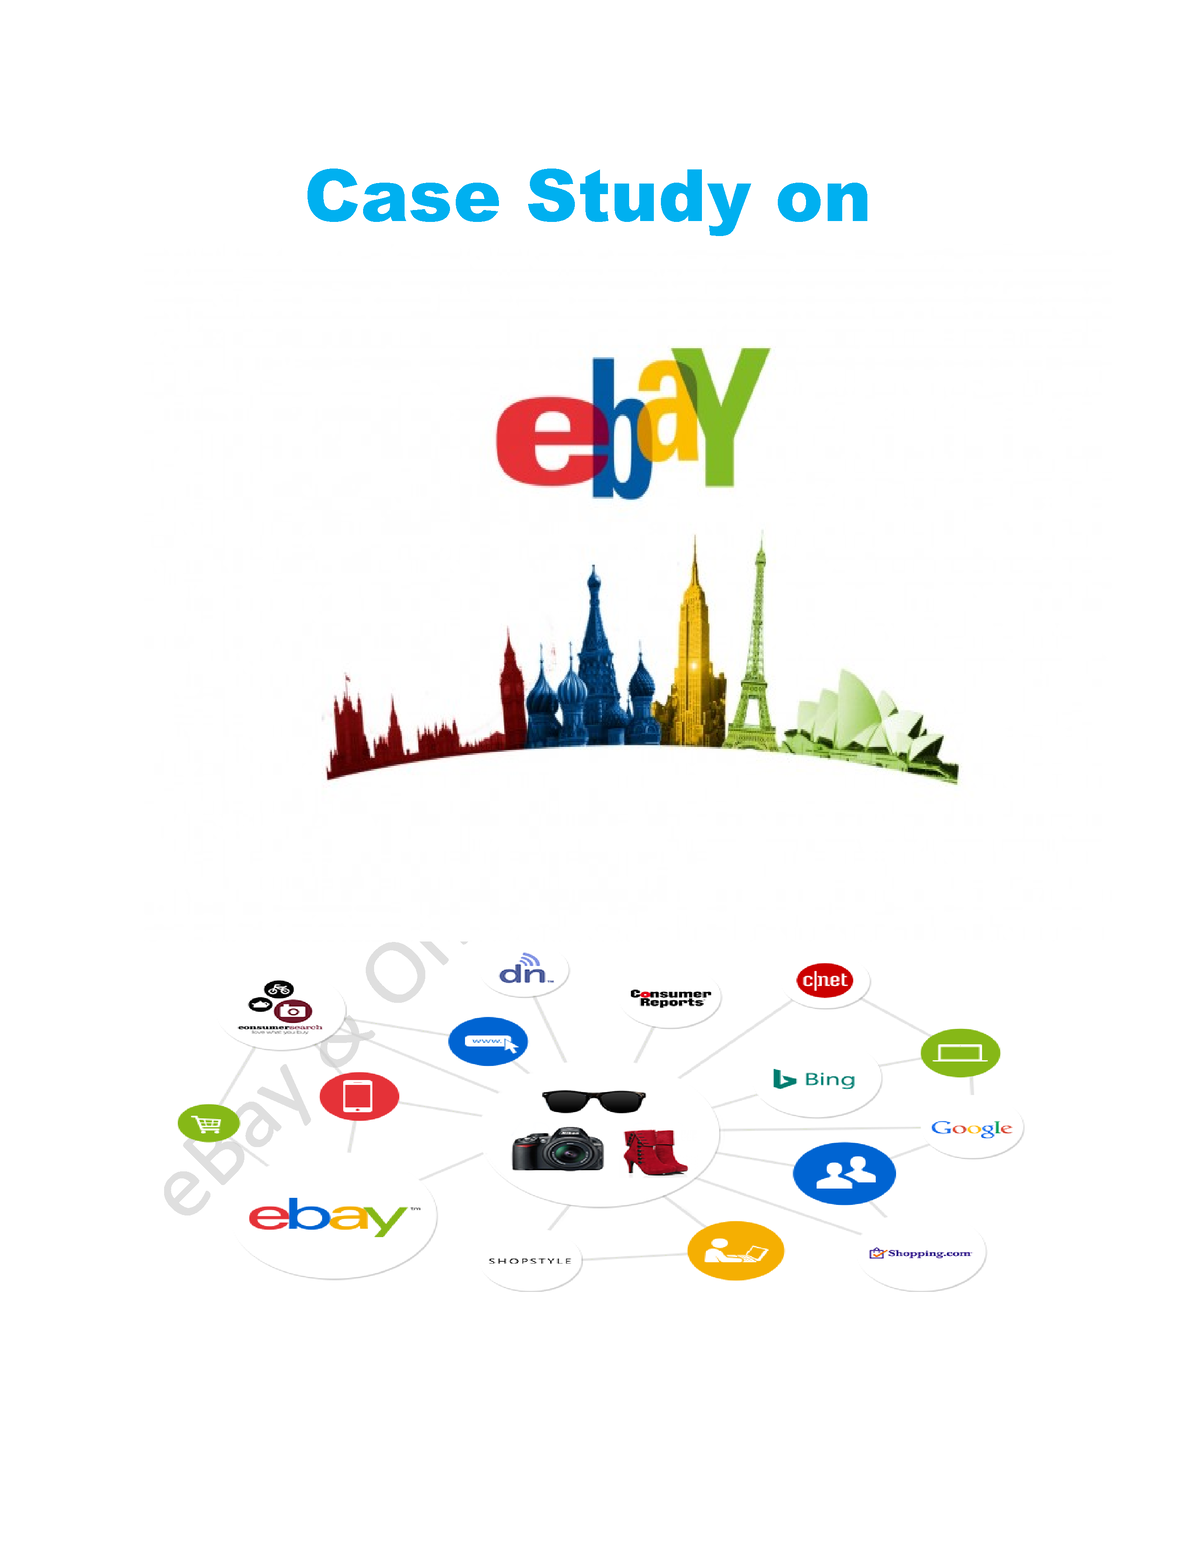 ebay case study solution